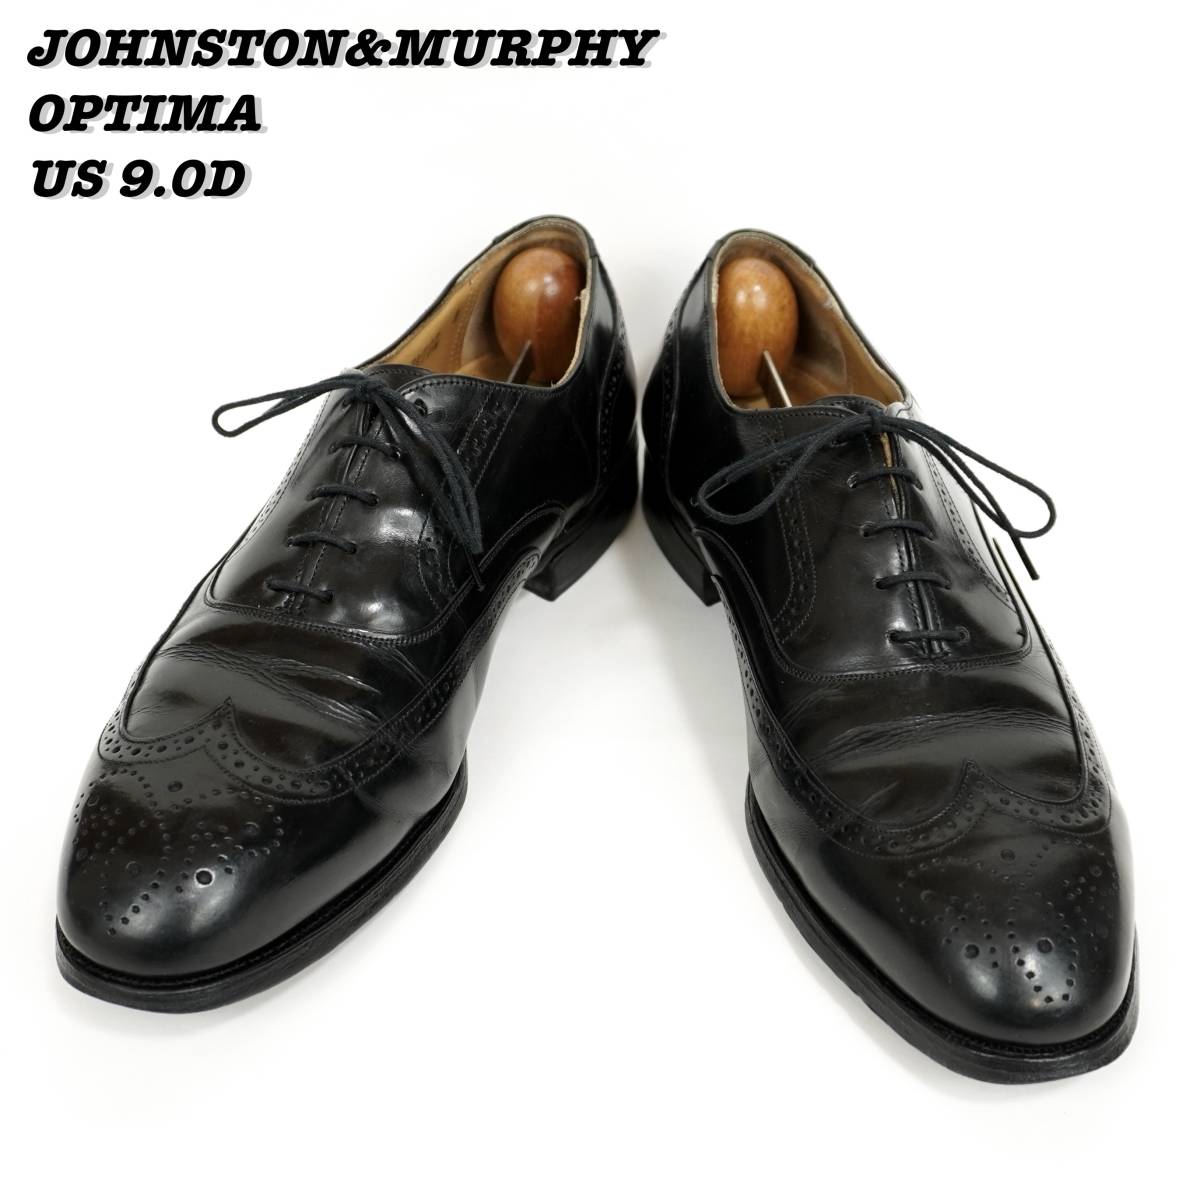 Johnston&Murphy OPTIMA Wing Tip Shoes 1990s US9.0D ジョンストンマーフィー オプティマ ウィングチップ 1990年代 革靴 古靴